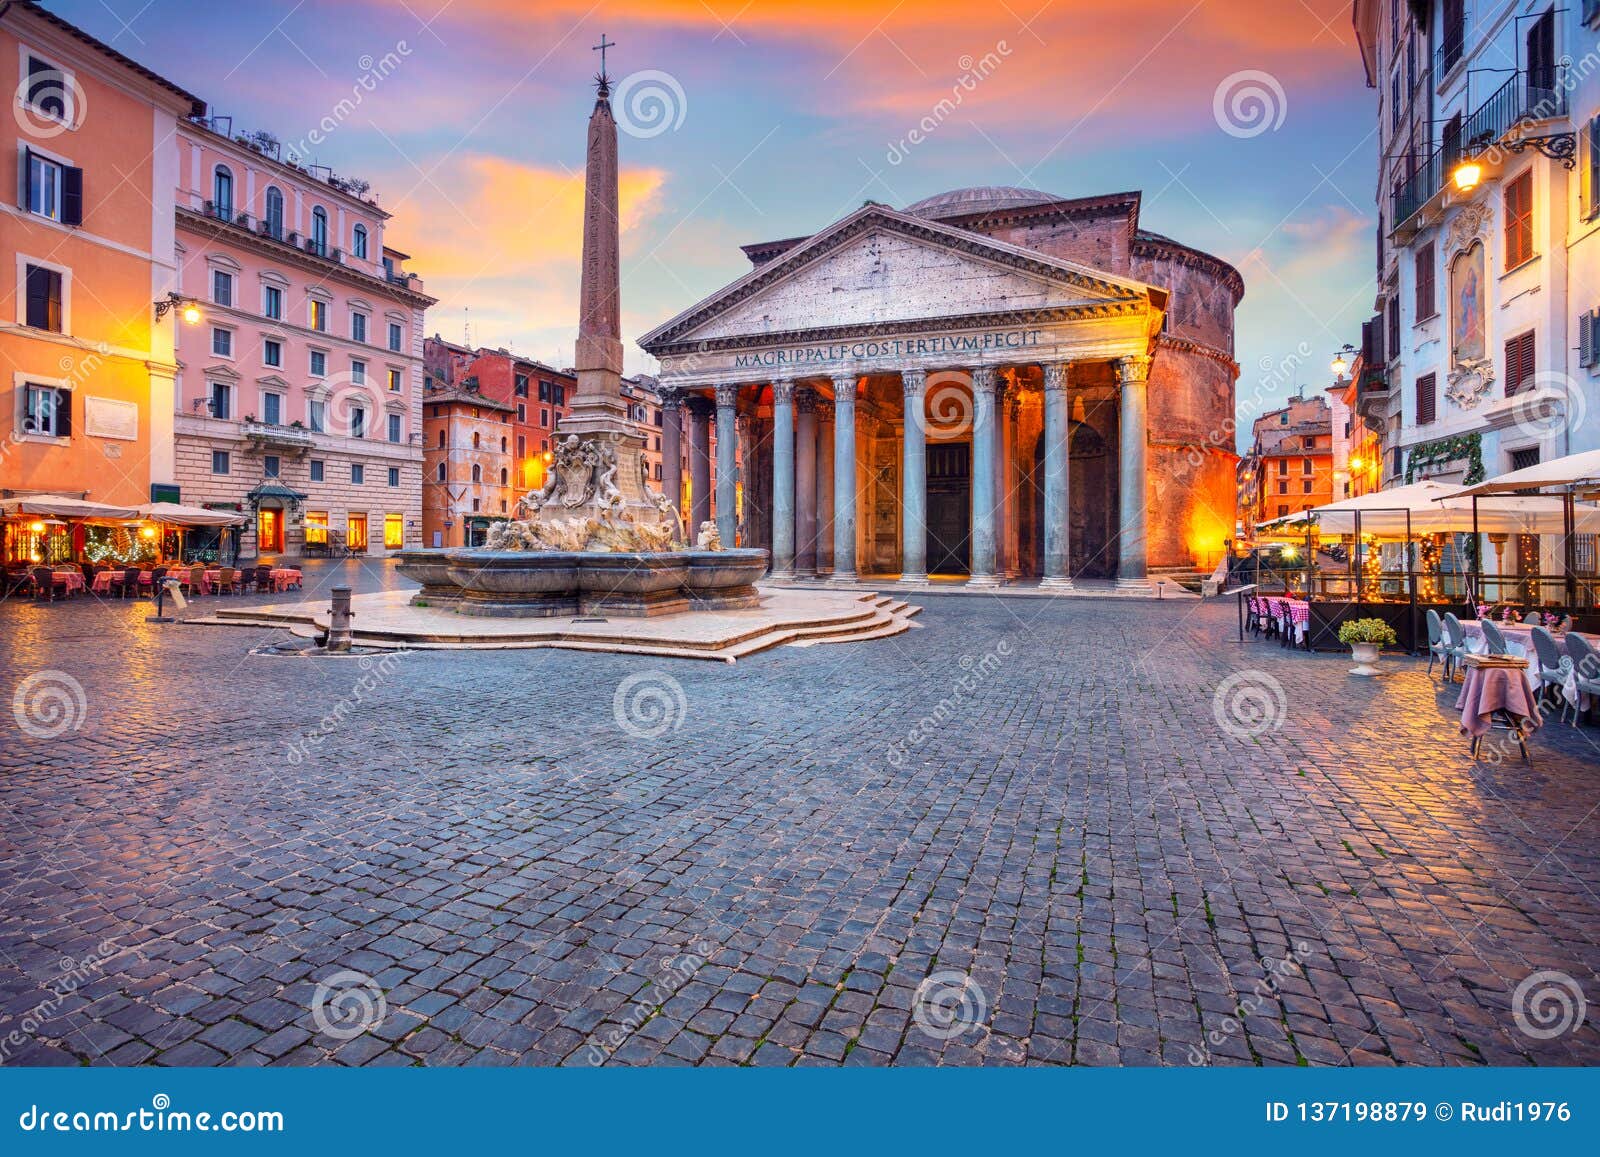 pantheon, rome.